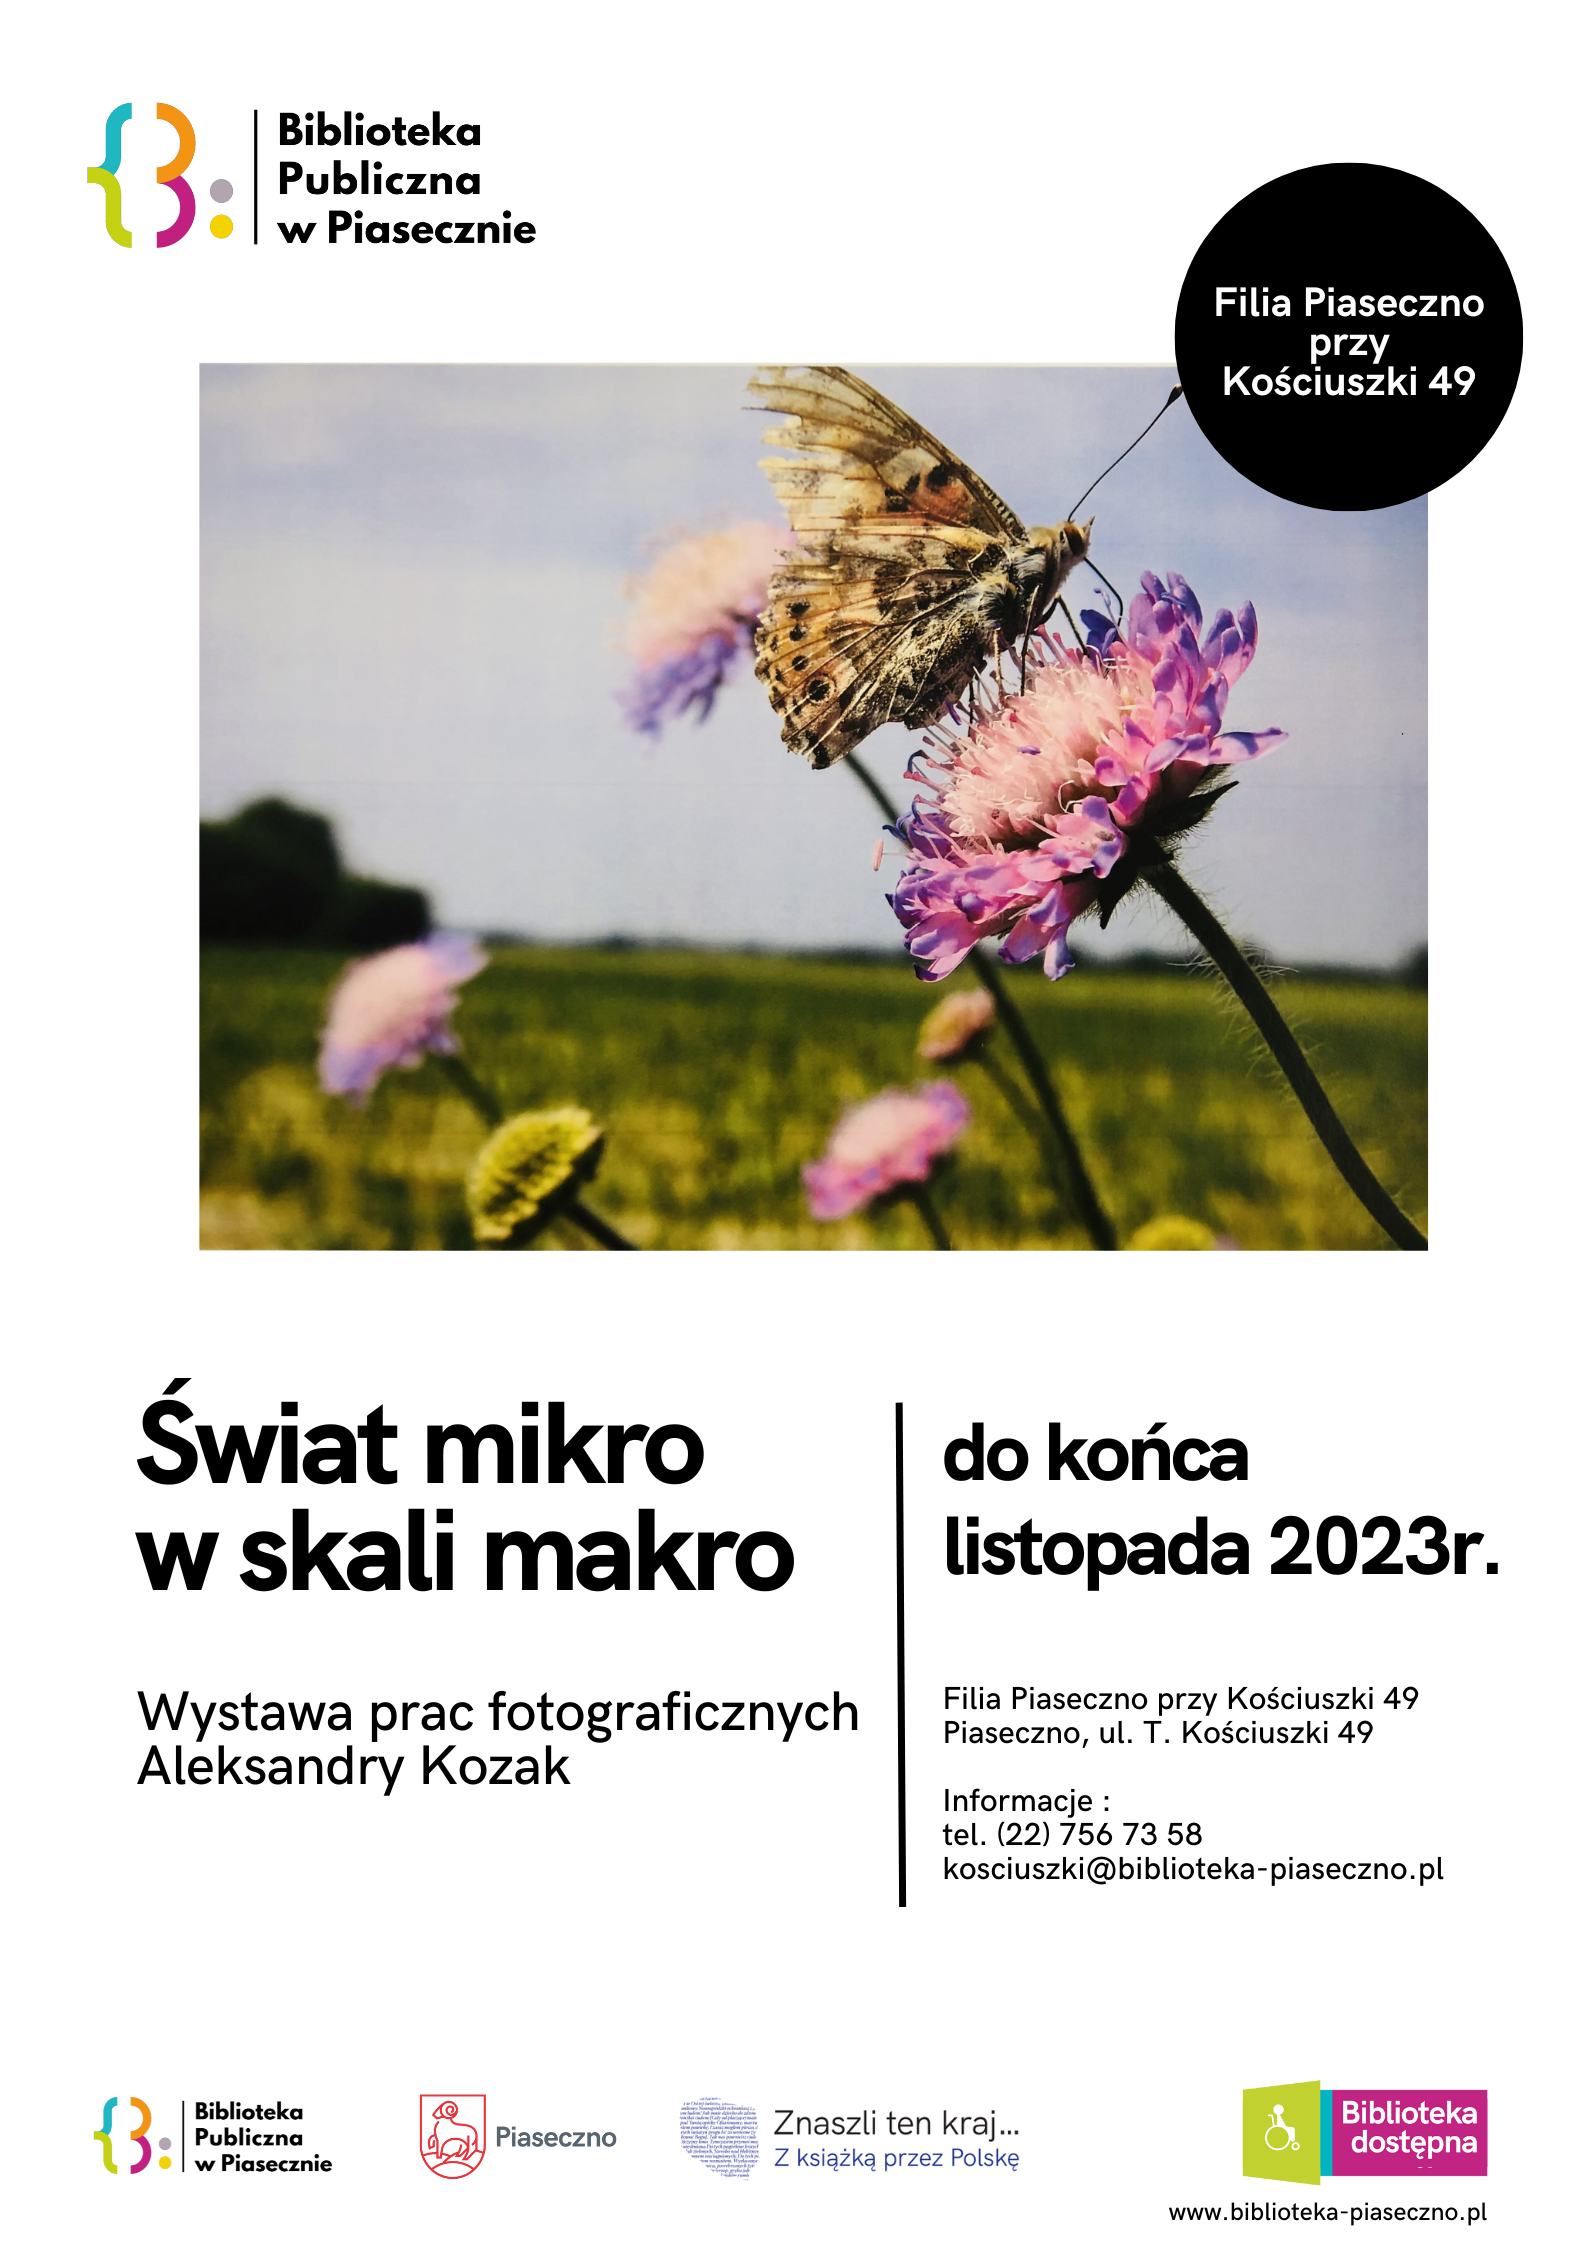 Plakat promujący wystawę fotograficzną Aleksandry Kozak